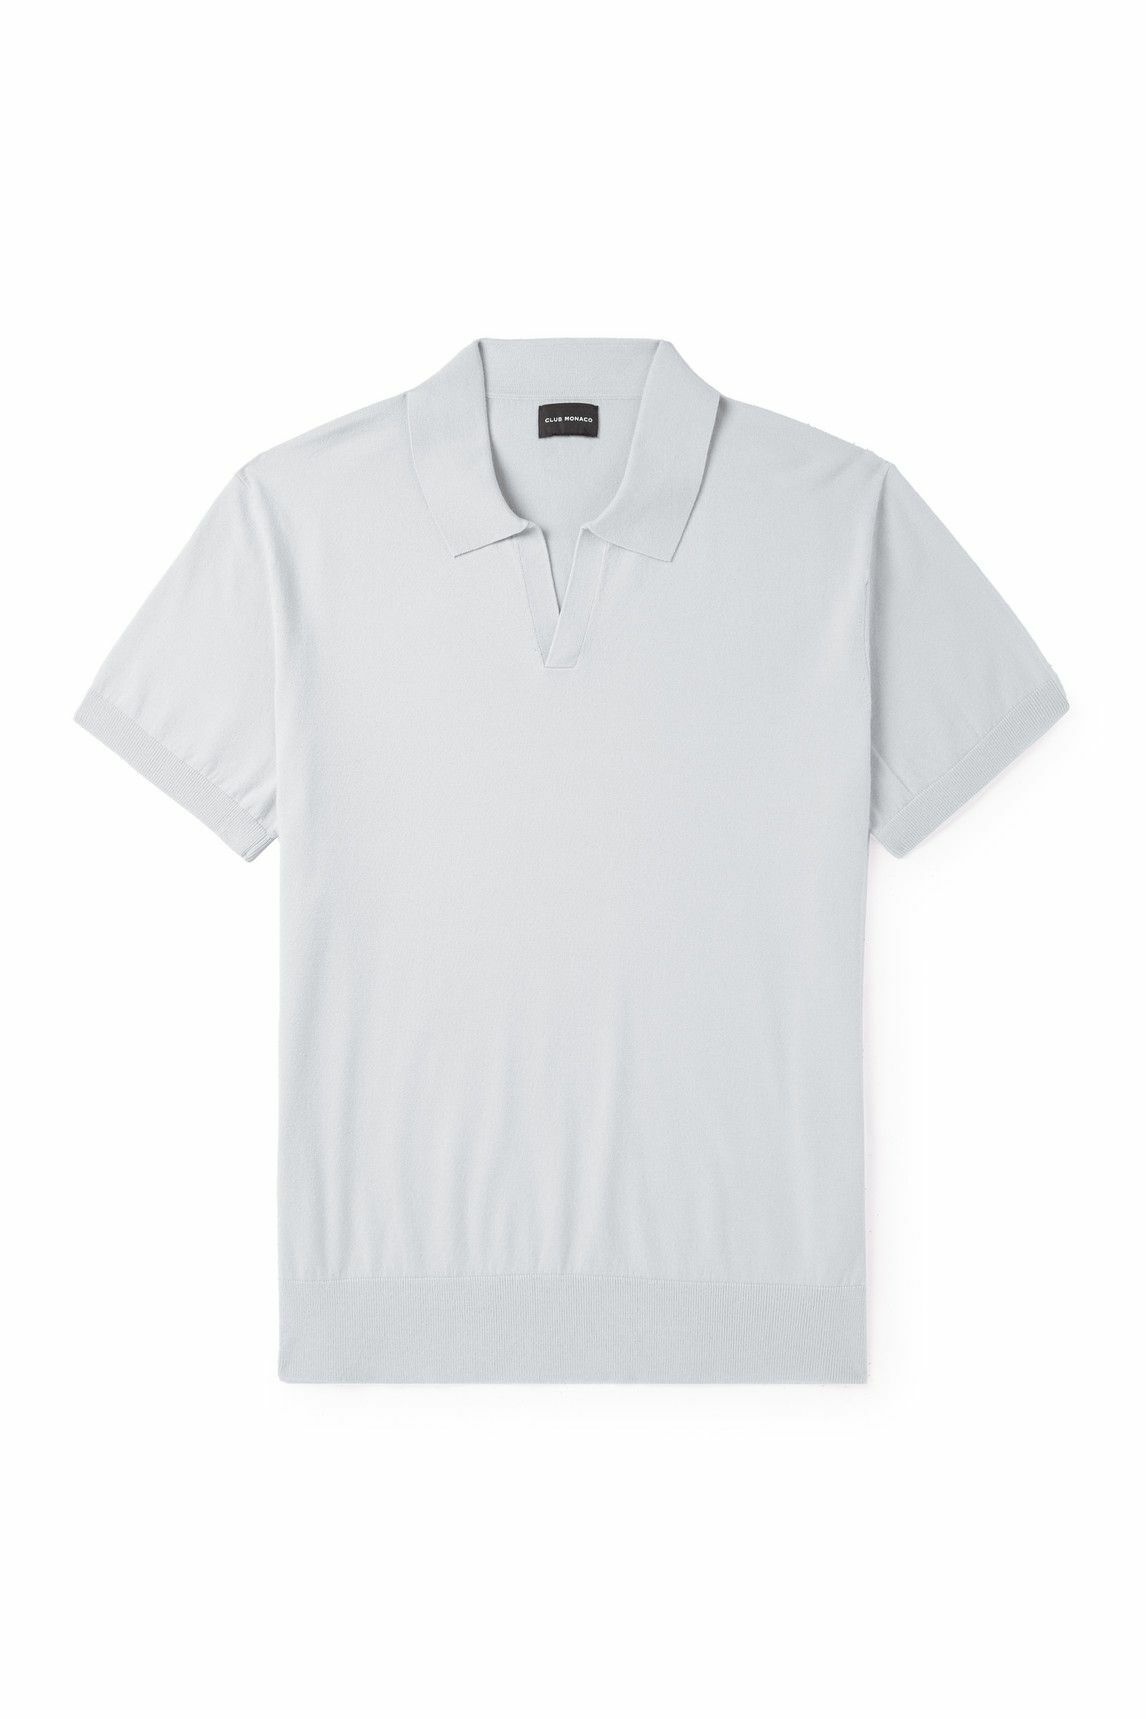 Club Monaco - Johnny ECOVERO™-Blend Polo Shirt - Gray Club Monaco